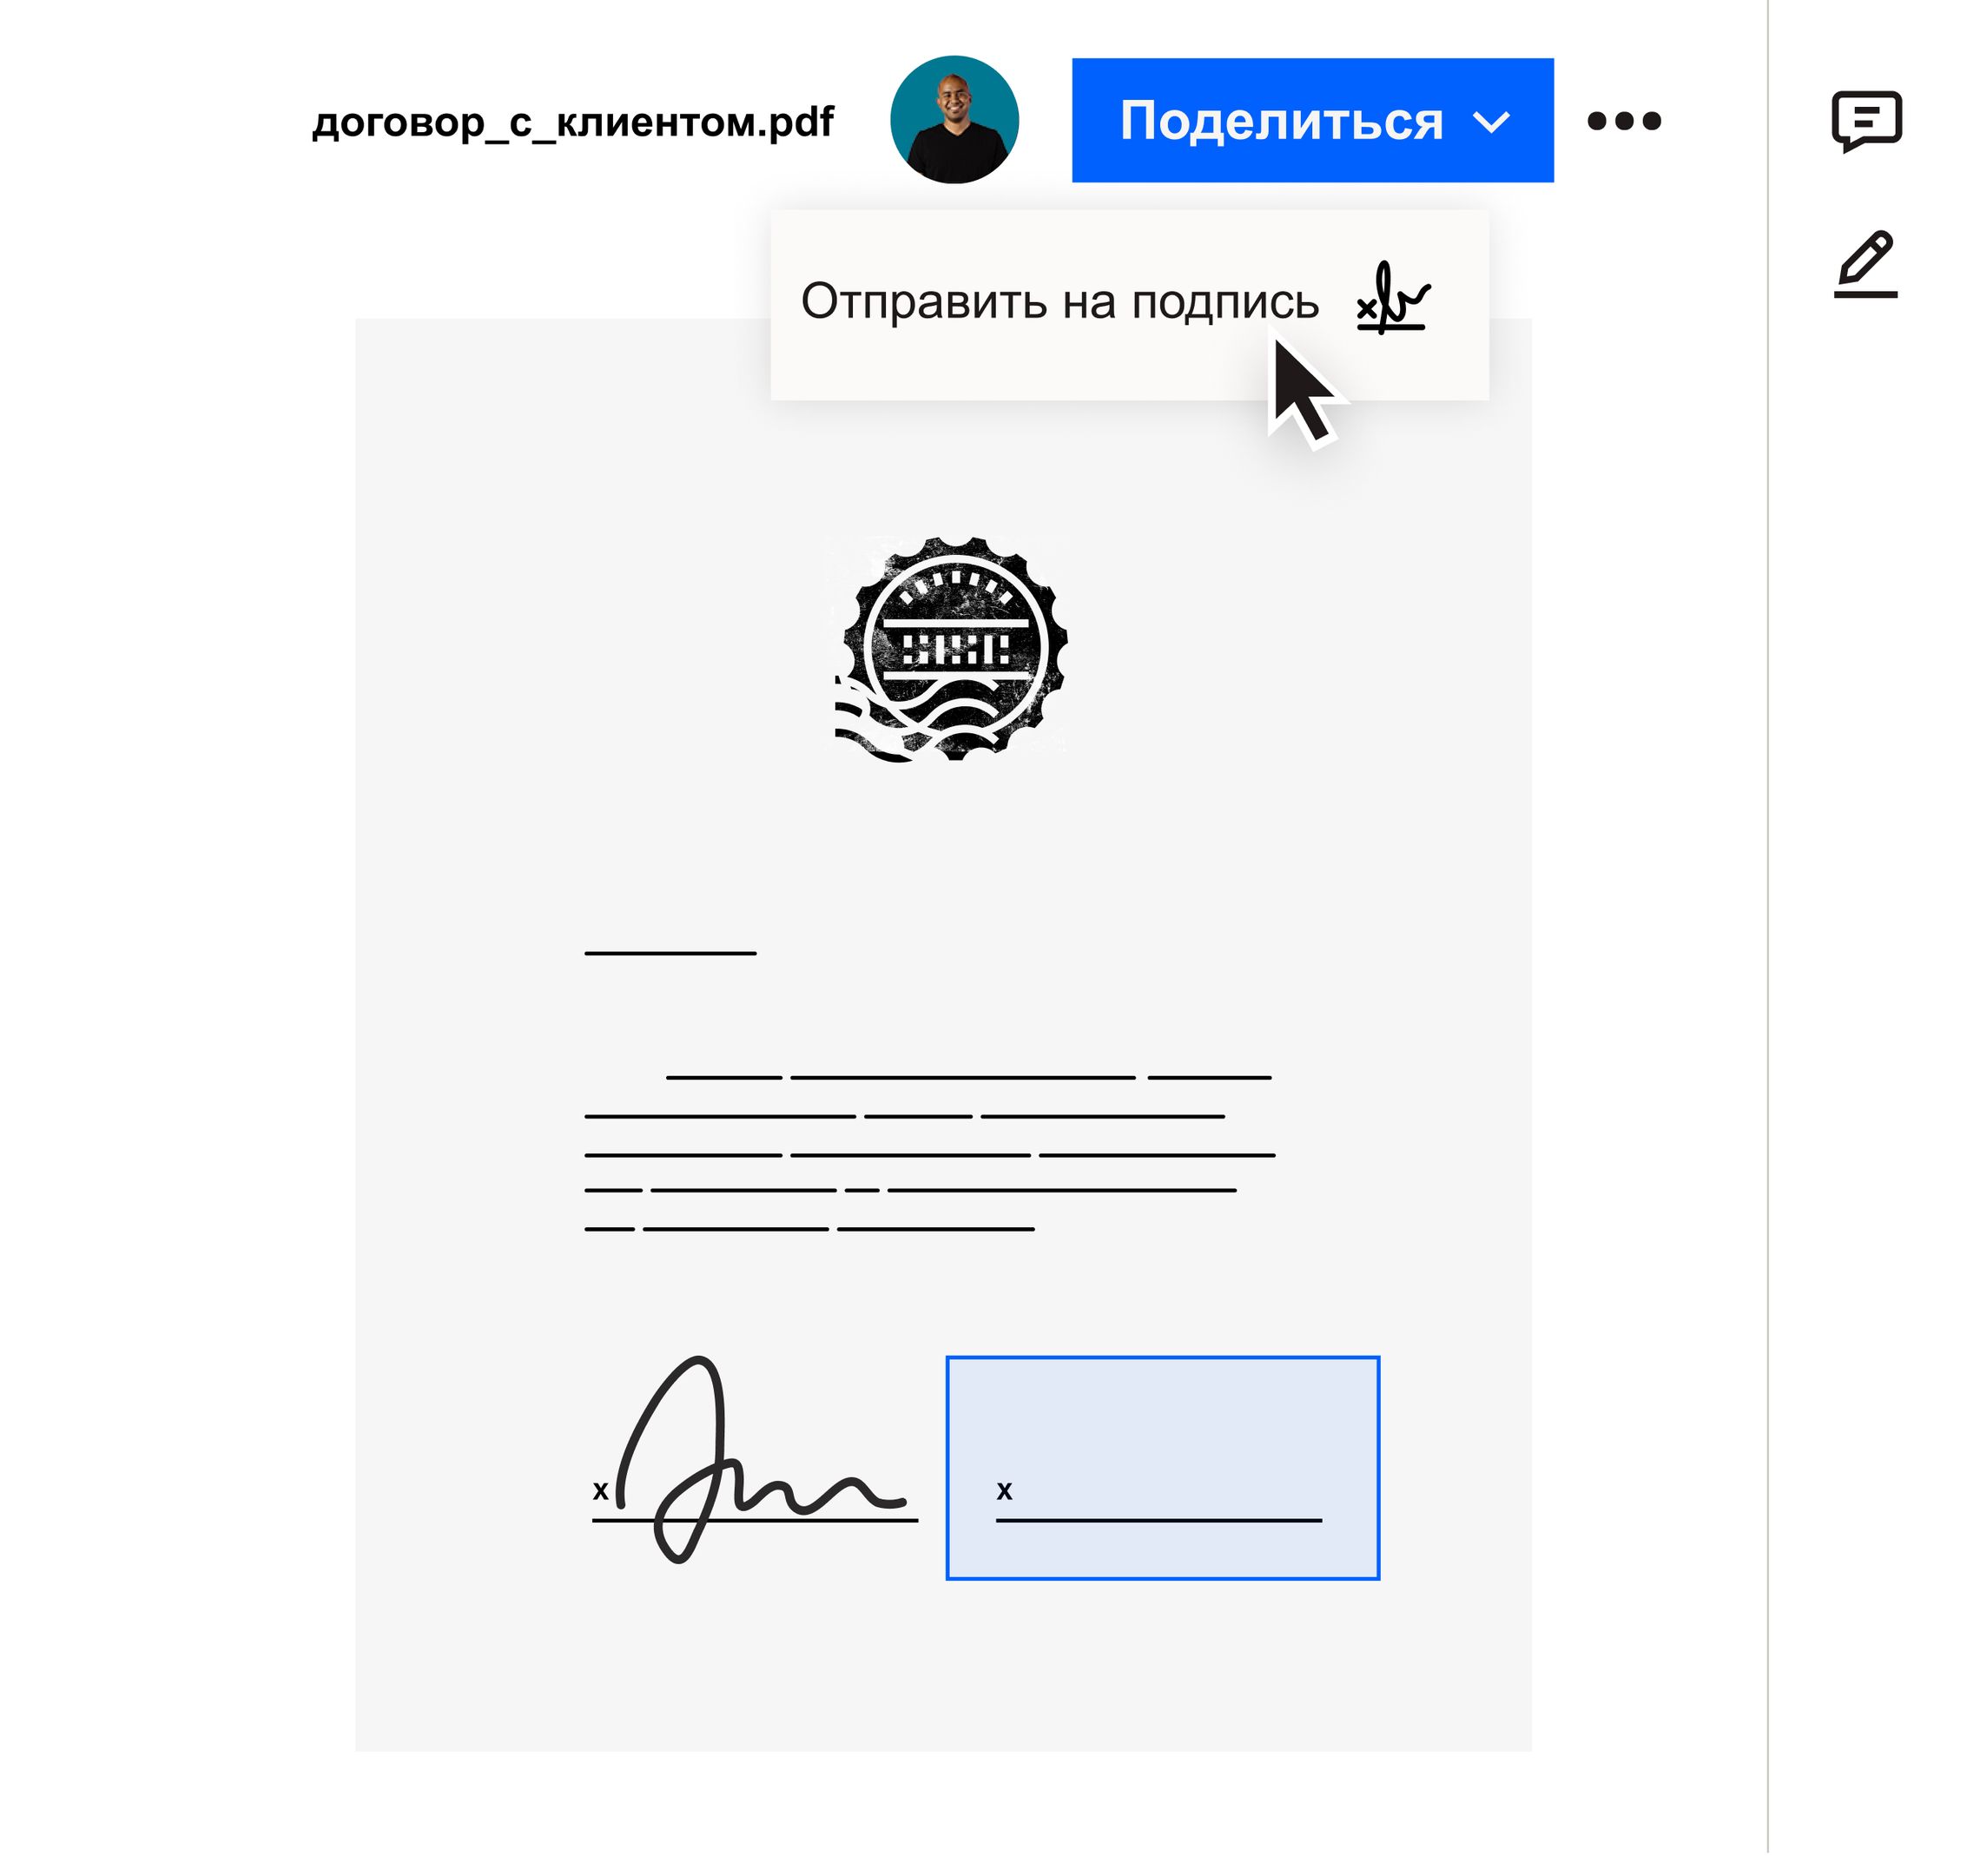 Пользователь щелкает пункт «Отправить на подпись» в раскрывающемся меню «Поделиться» в интерфейсе Dropbox